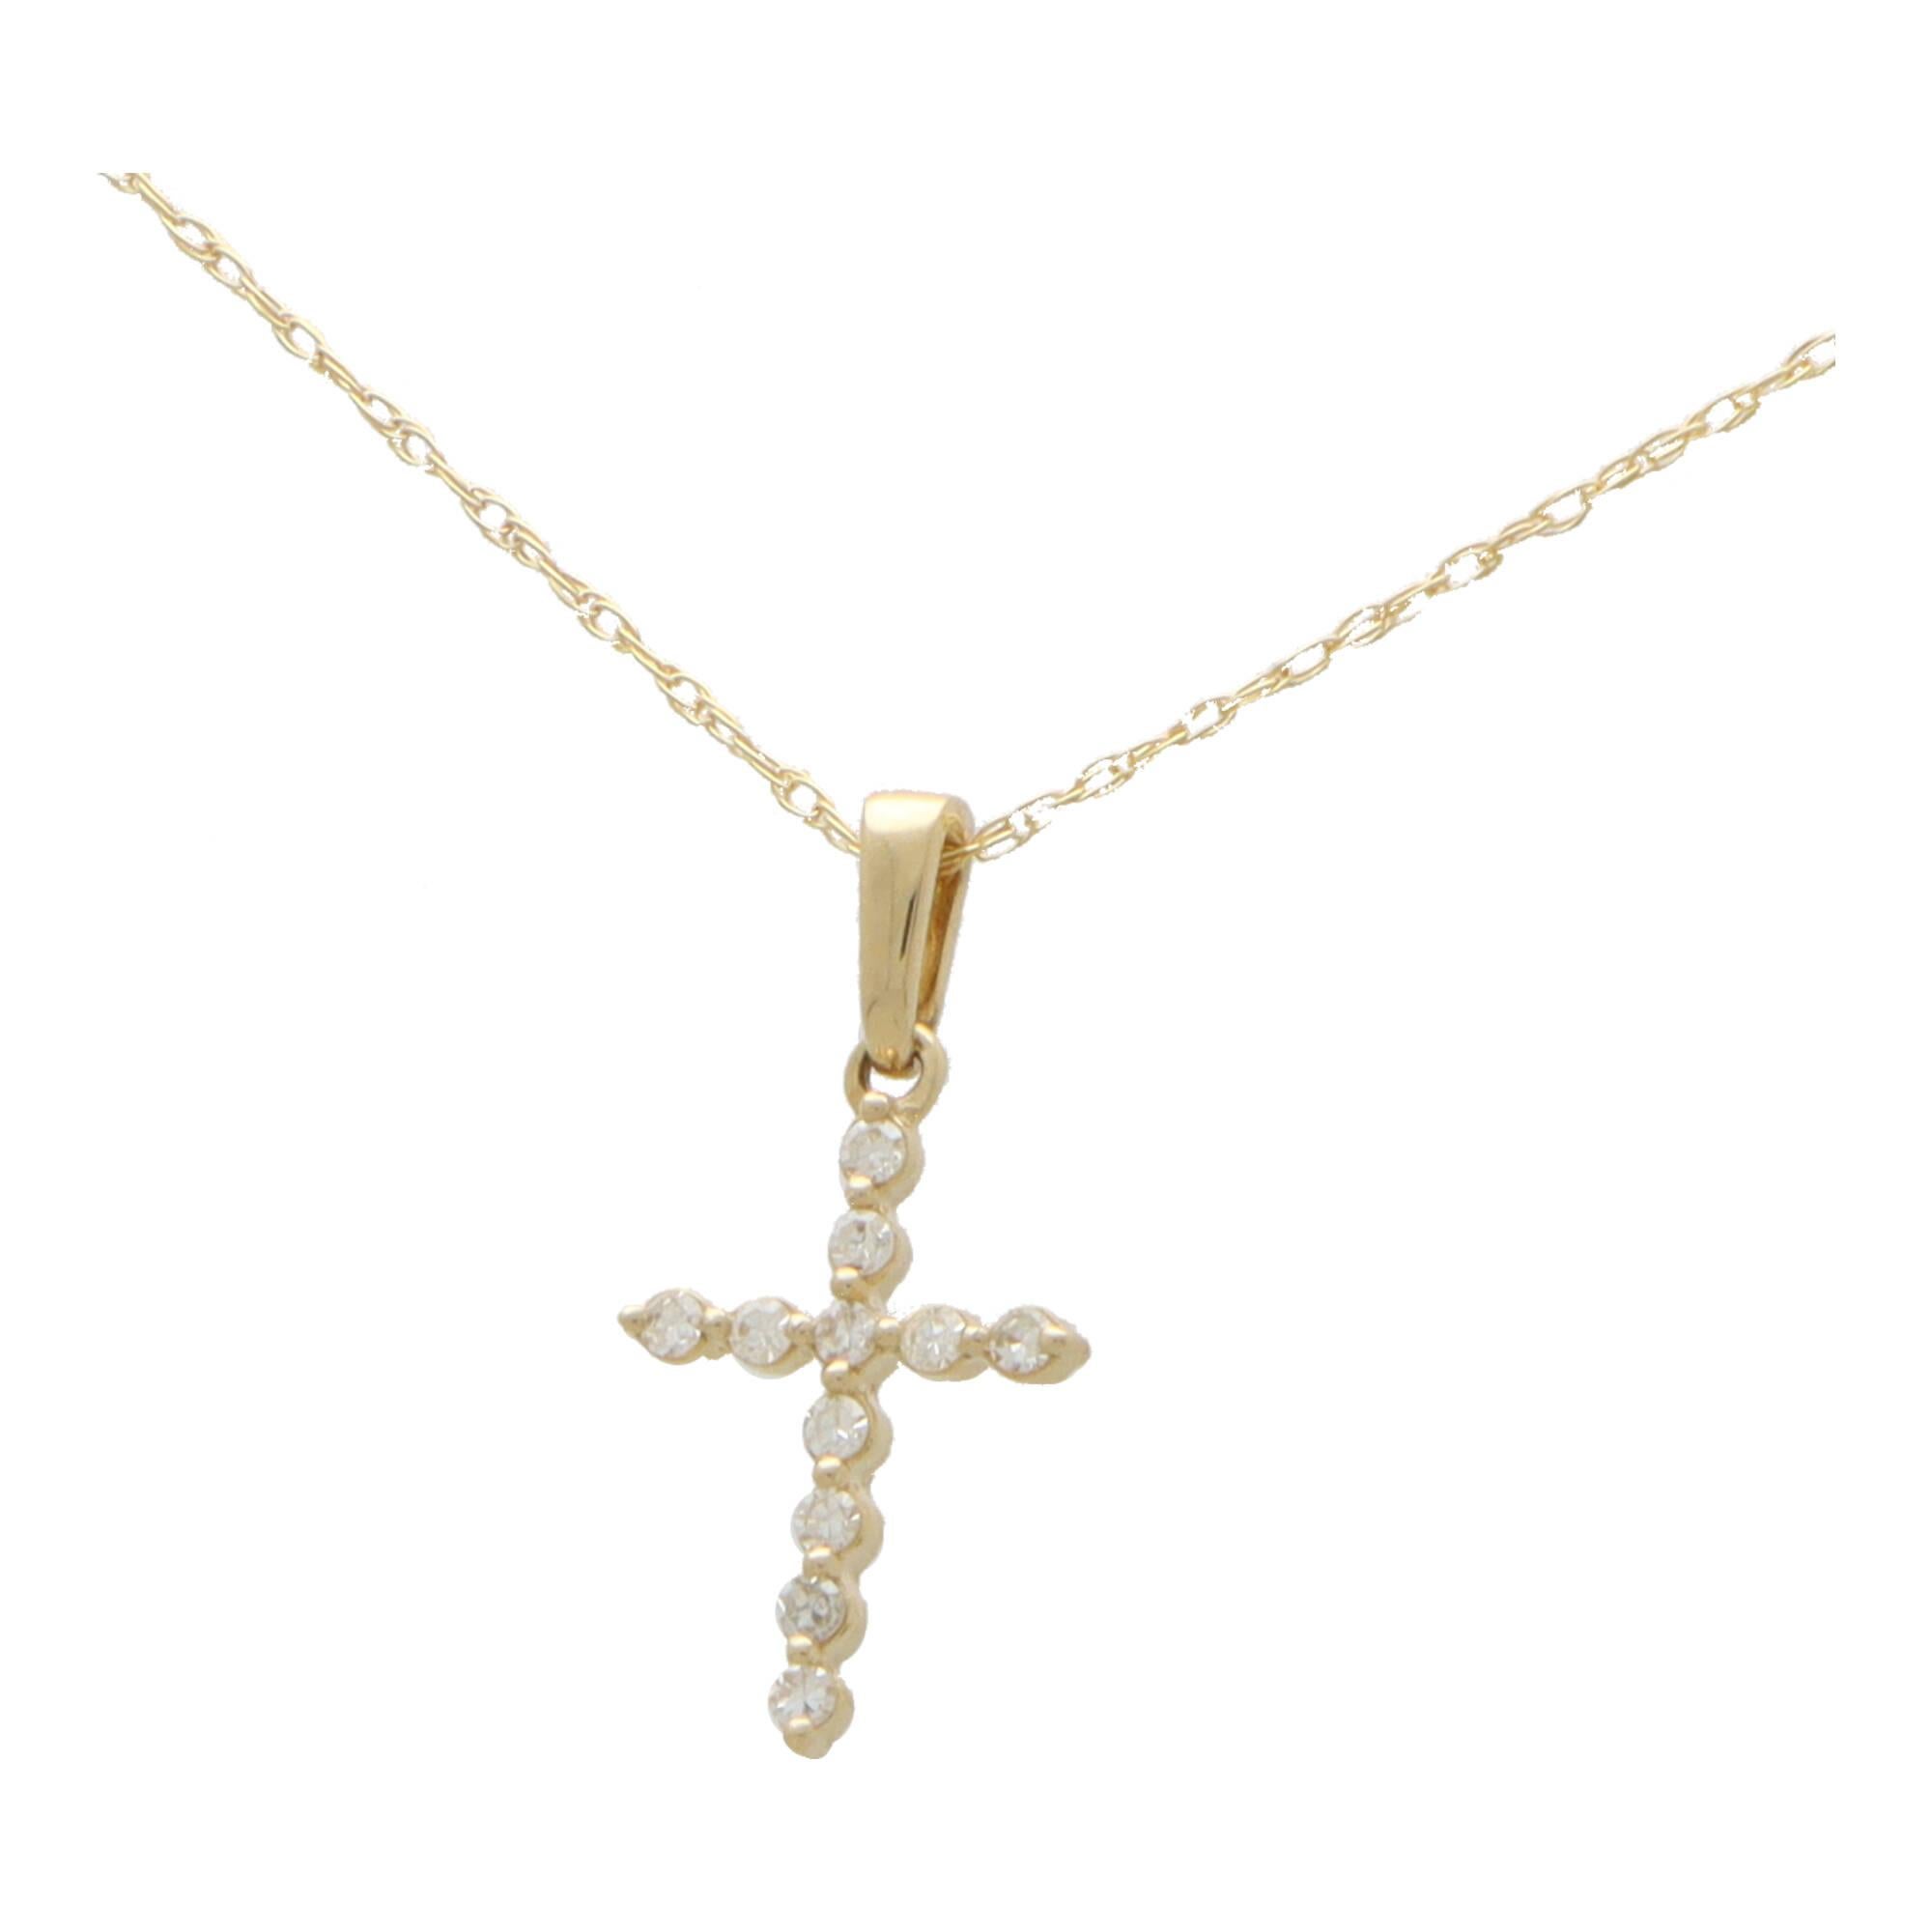  Eine zierliche Diamant-Kreuz-Anhänger-Halskette aus 14 Karat Gelbgold.

Der Anhänger zeigt ein Kreuzmotiv und ist mit genau 11 runden Diamanten im Brillantschliff besetzt. Das Kreuz hängt an einem gelbgoldenen Bügel und hängt an einer feinen